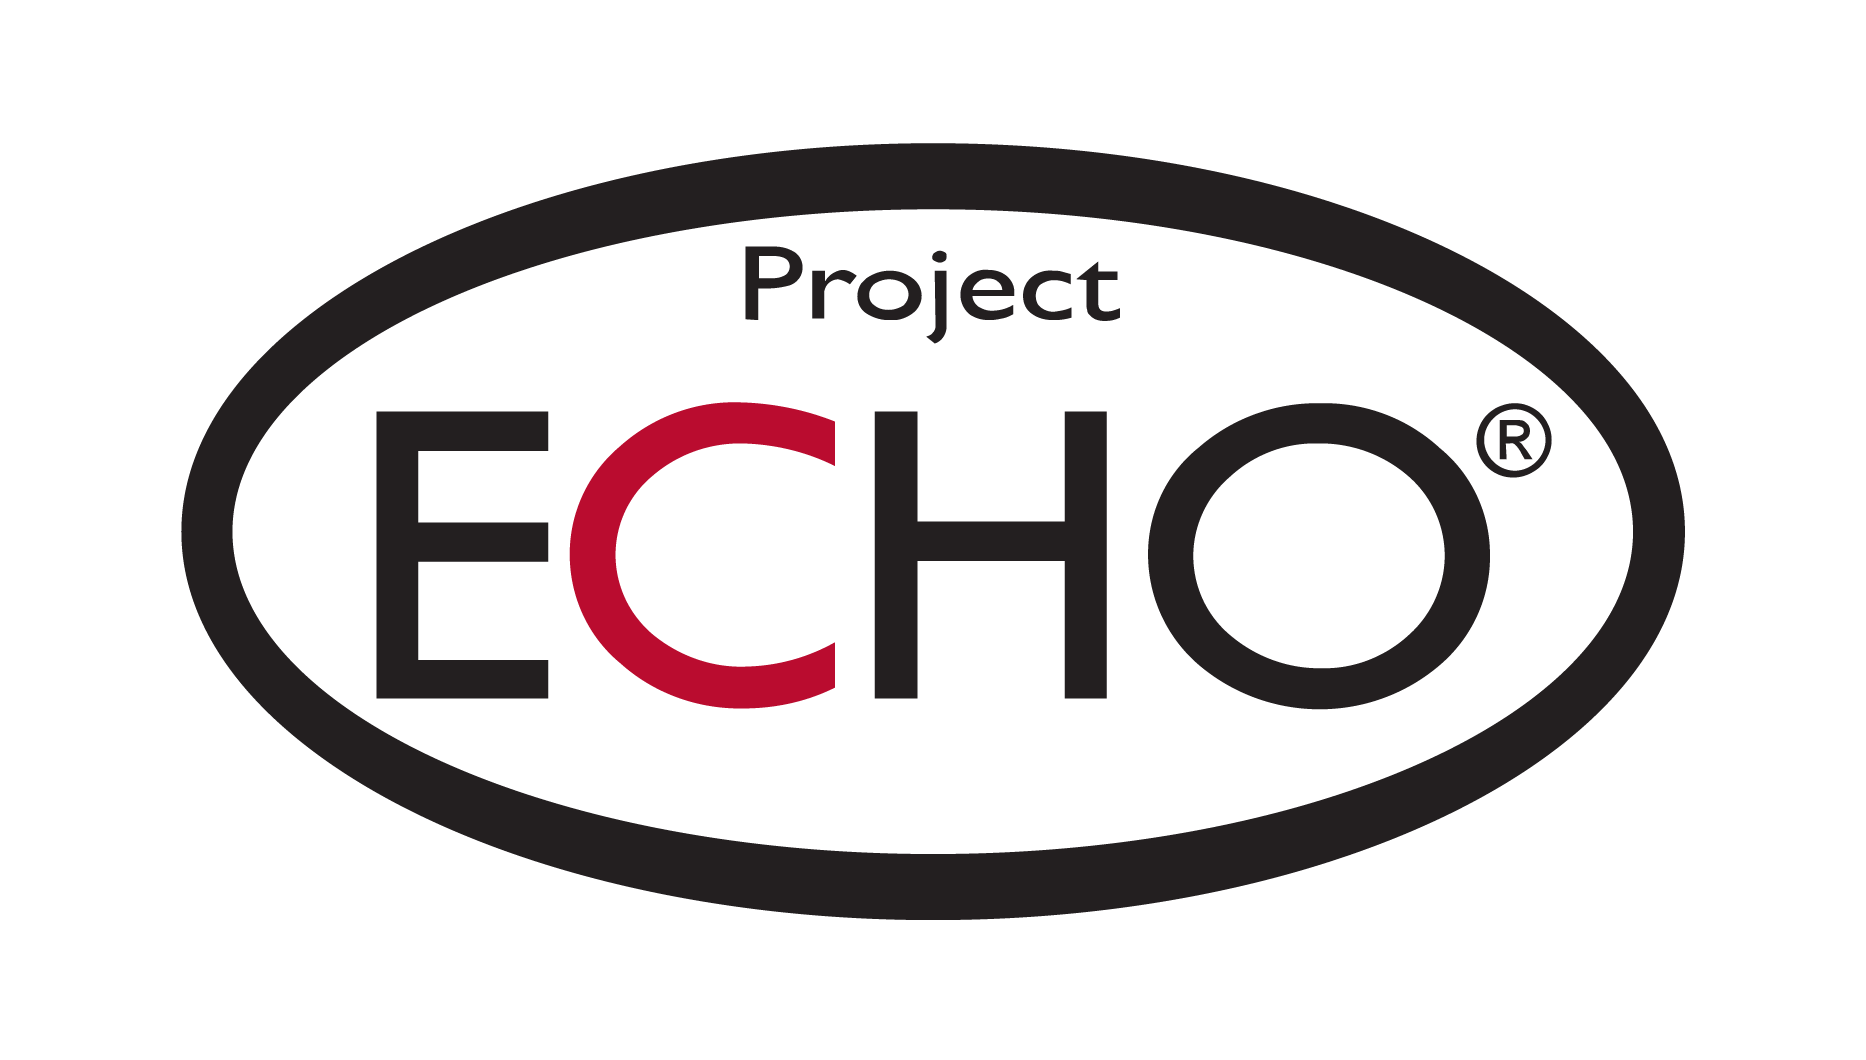 Project ECHO logo